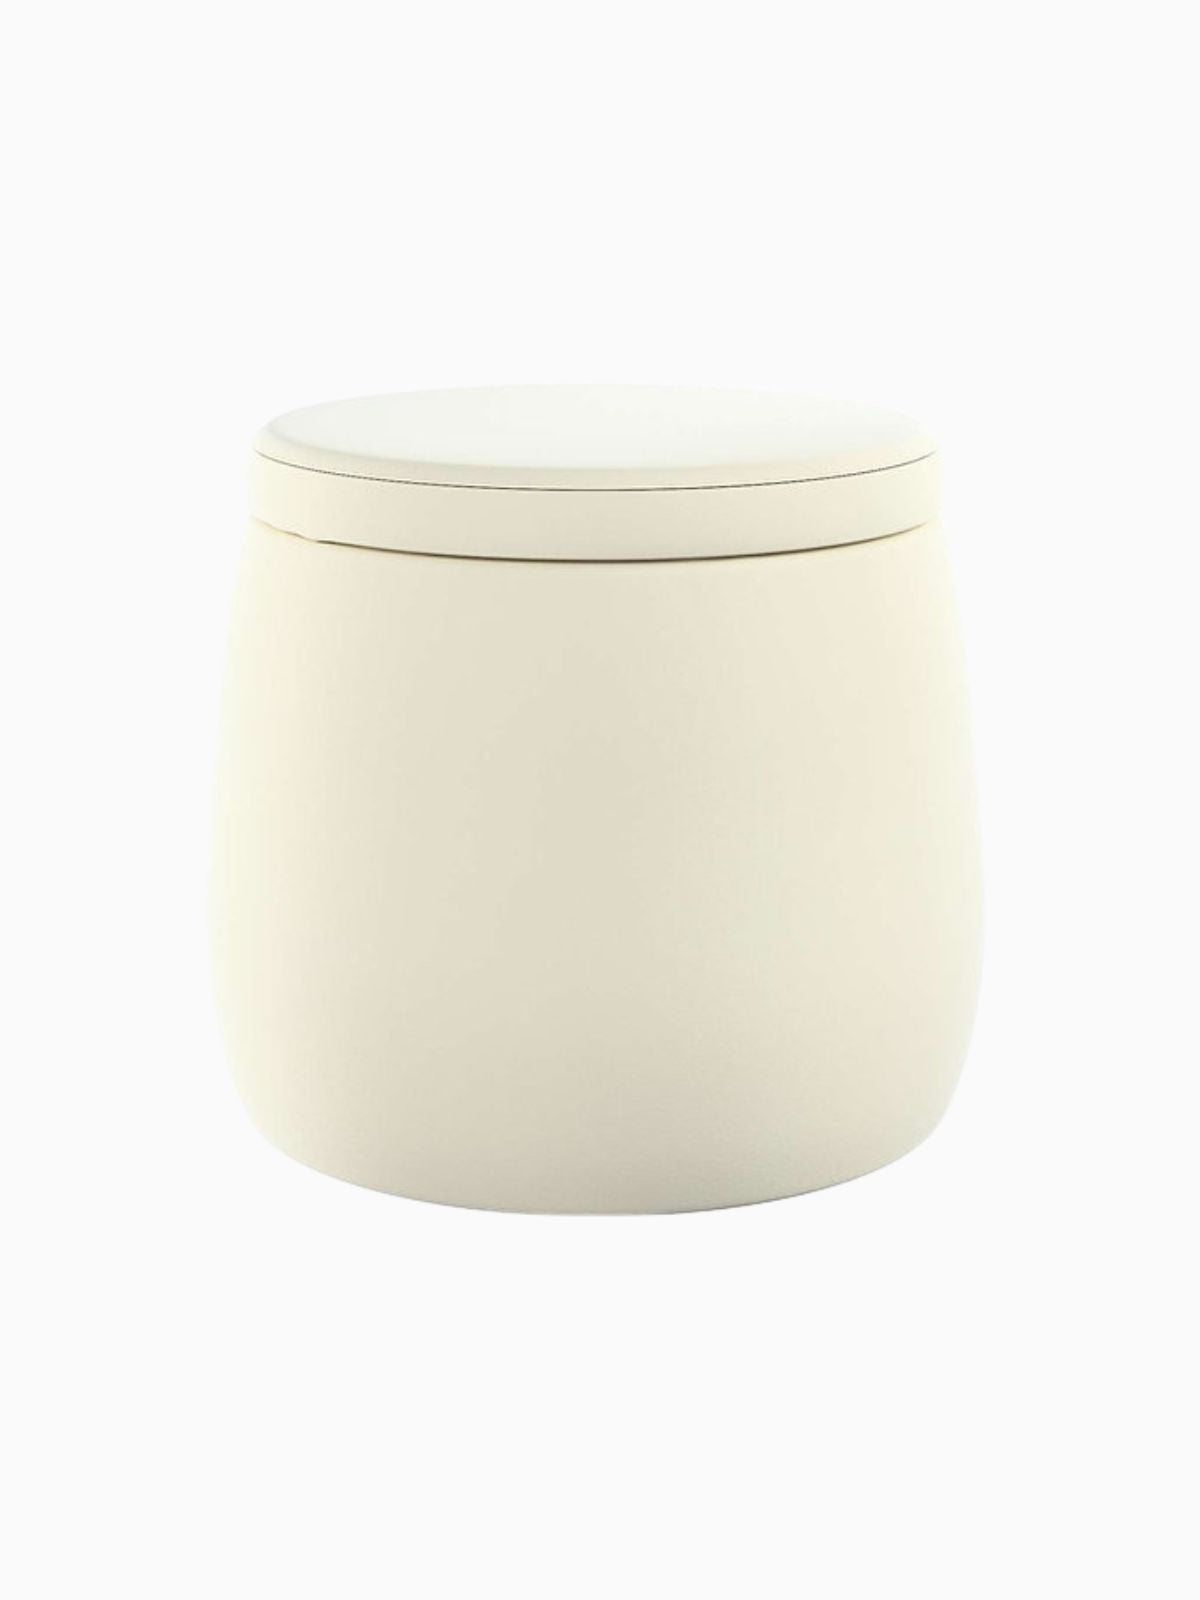 Pouf contenitore Candy Jar in velluto, colore crema 40x40 cm.-1